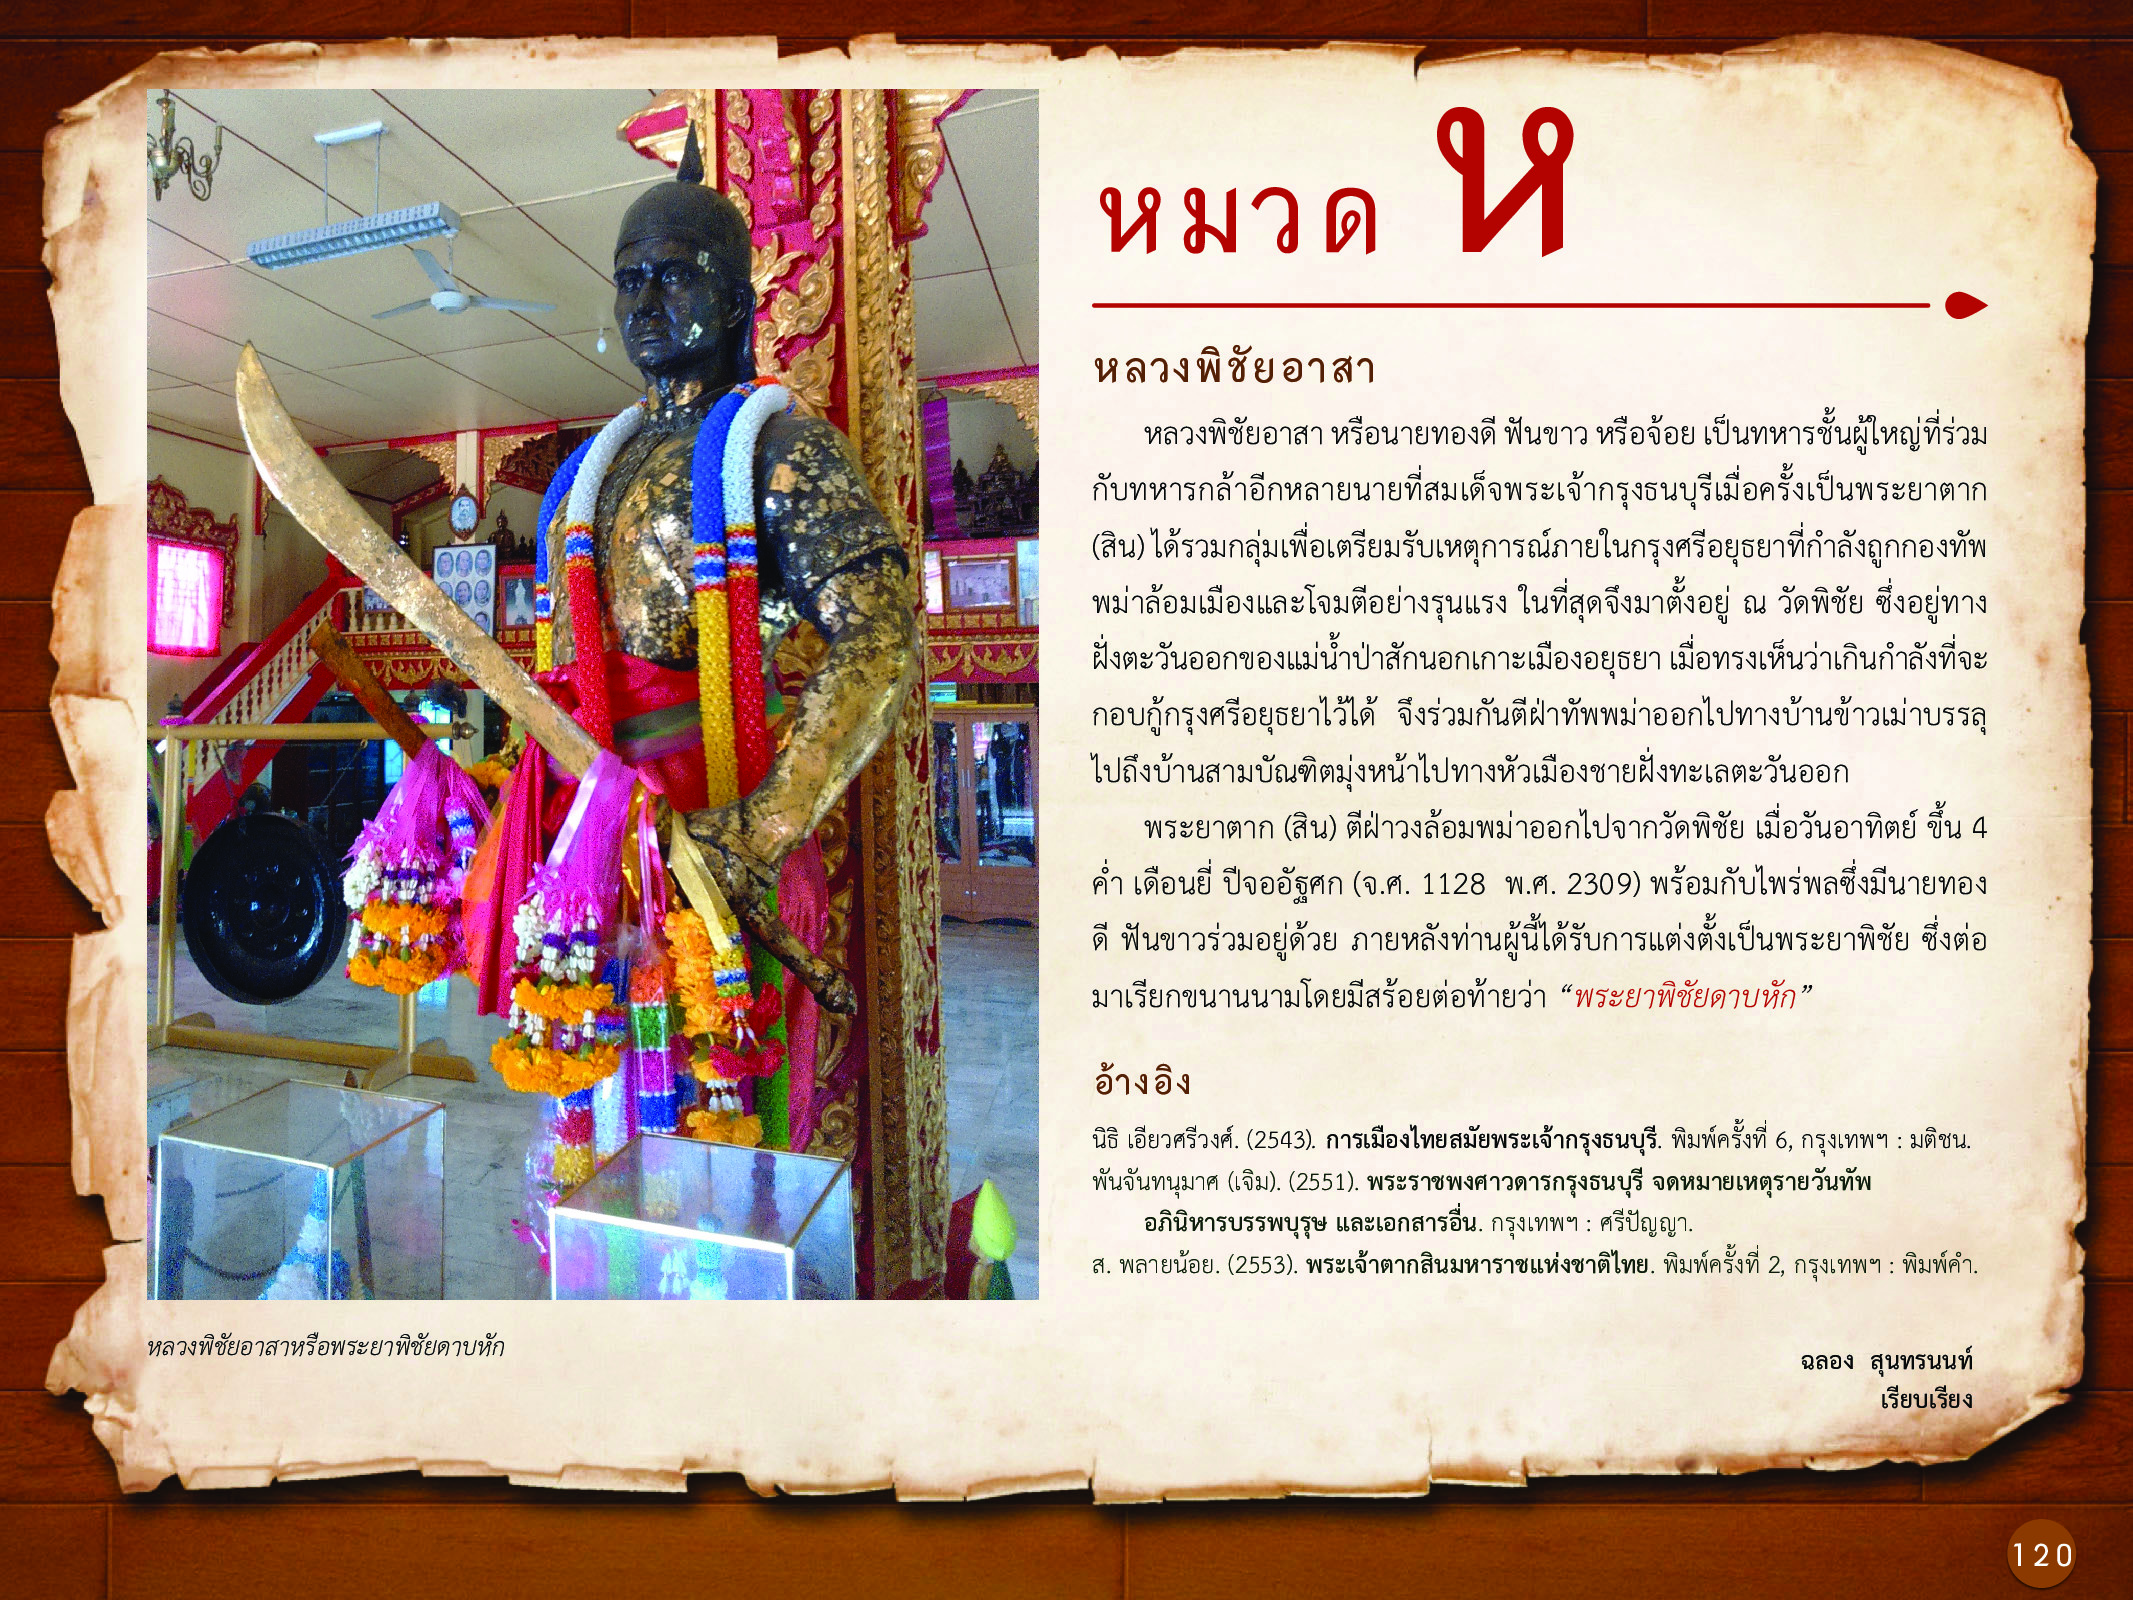 ประวัติศาสตร์กรุงธนบุรี ./images/history_dhonburi/120.jpg